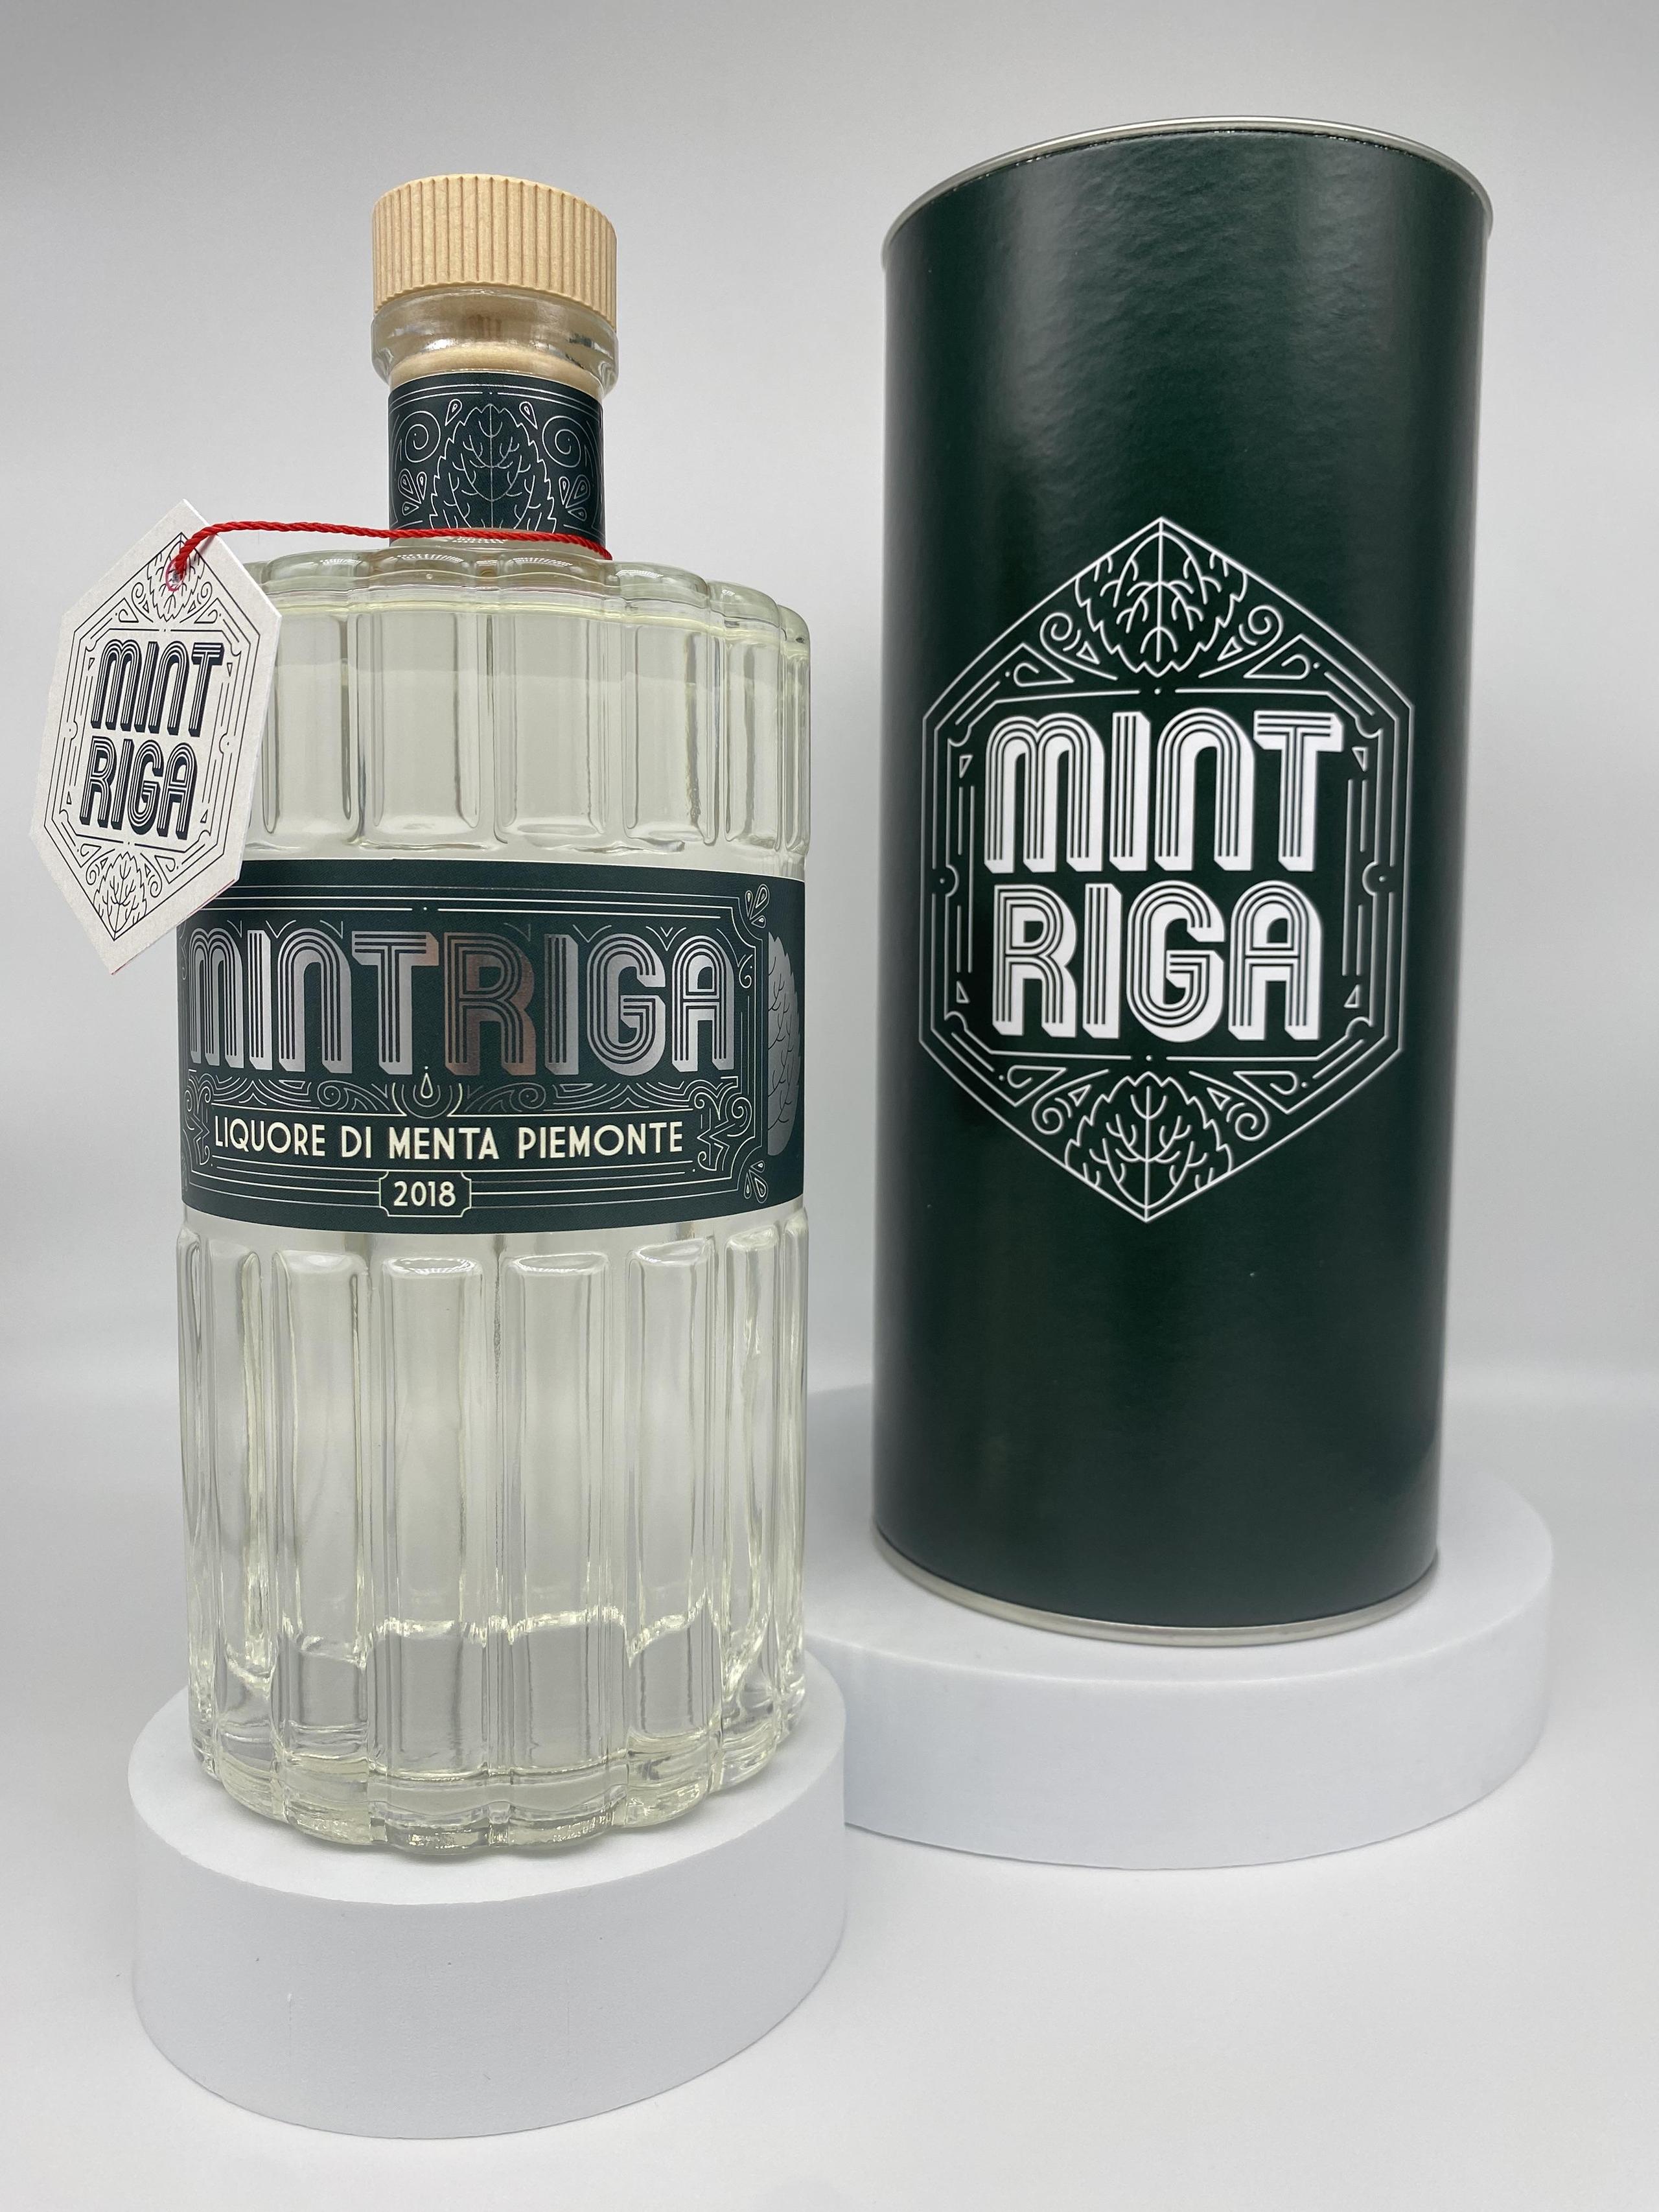 Mintriga Liquore bottiglia 70 cl + confezione regalo